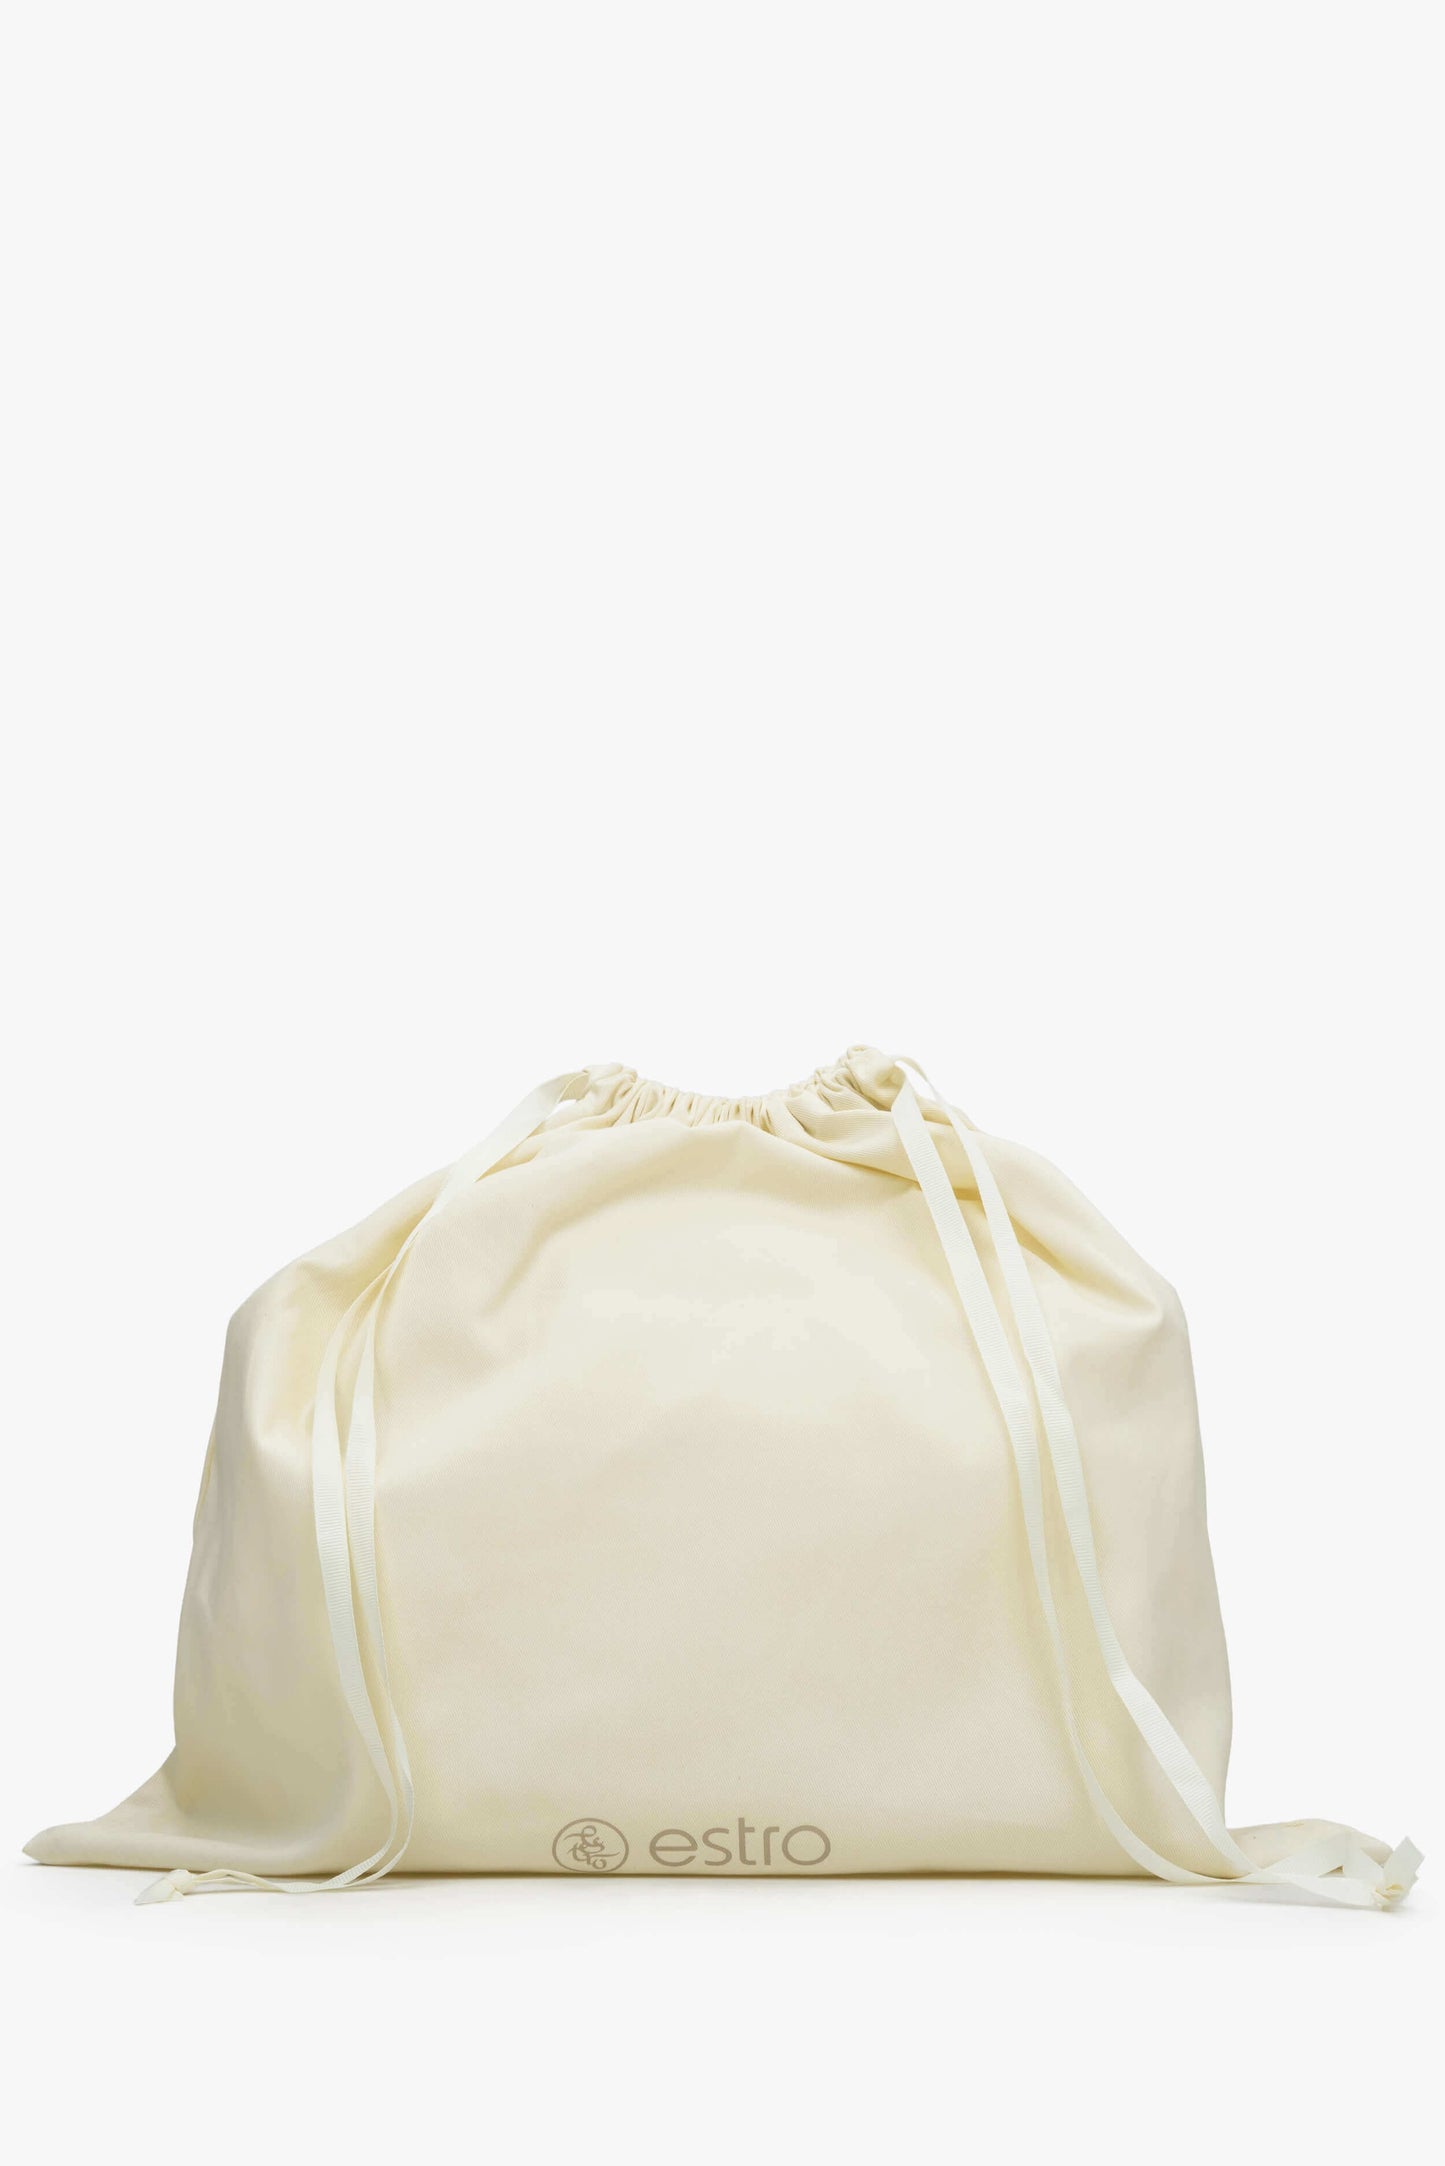 Damska beżowa torebka typu hobo marki Estro - zbliżenie na wnętrze modelu.